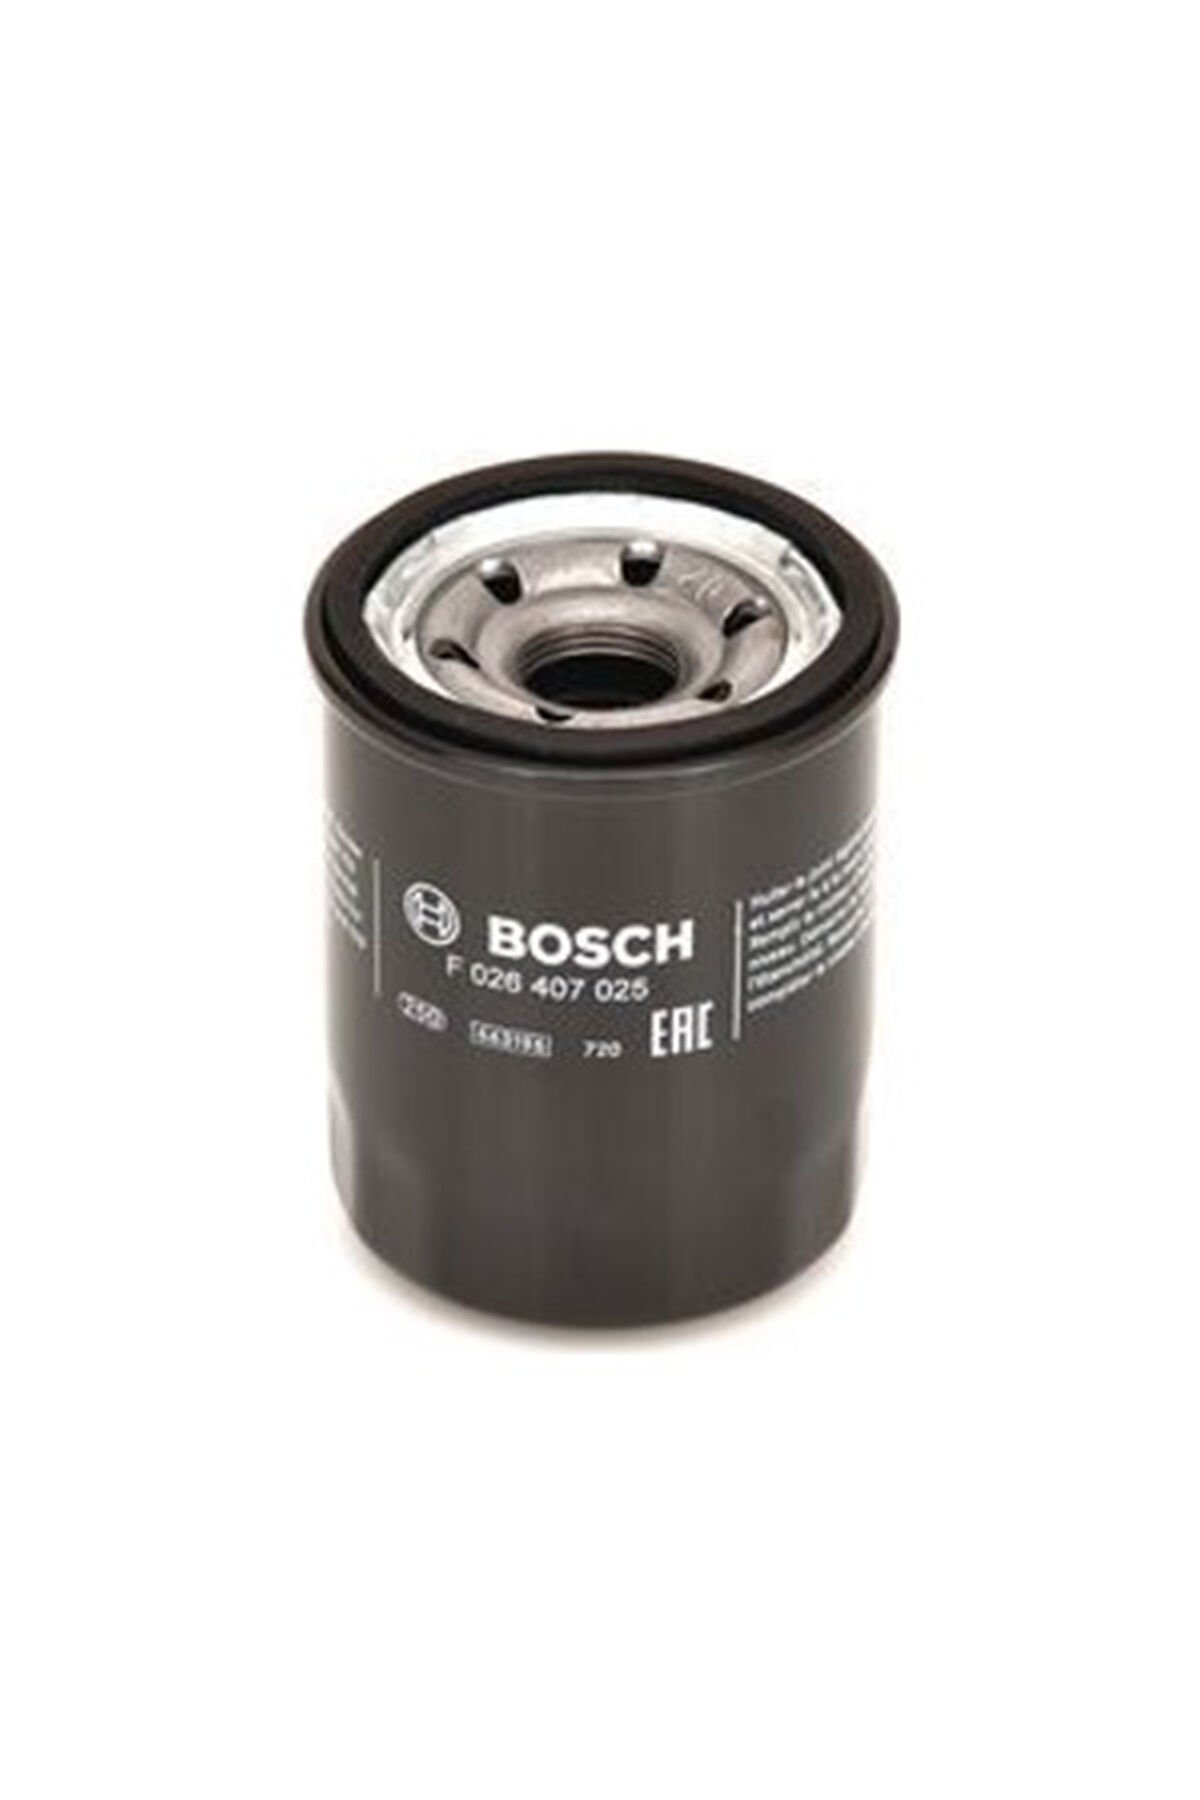 Kia Rio 1.25 Benzinli Yağ Filtresi 2012-2016 Bosch